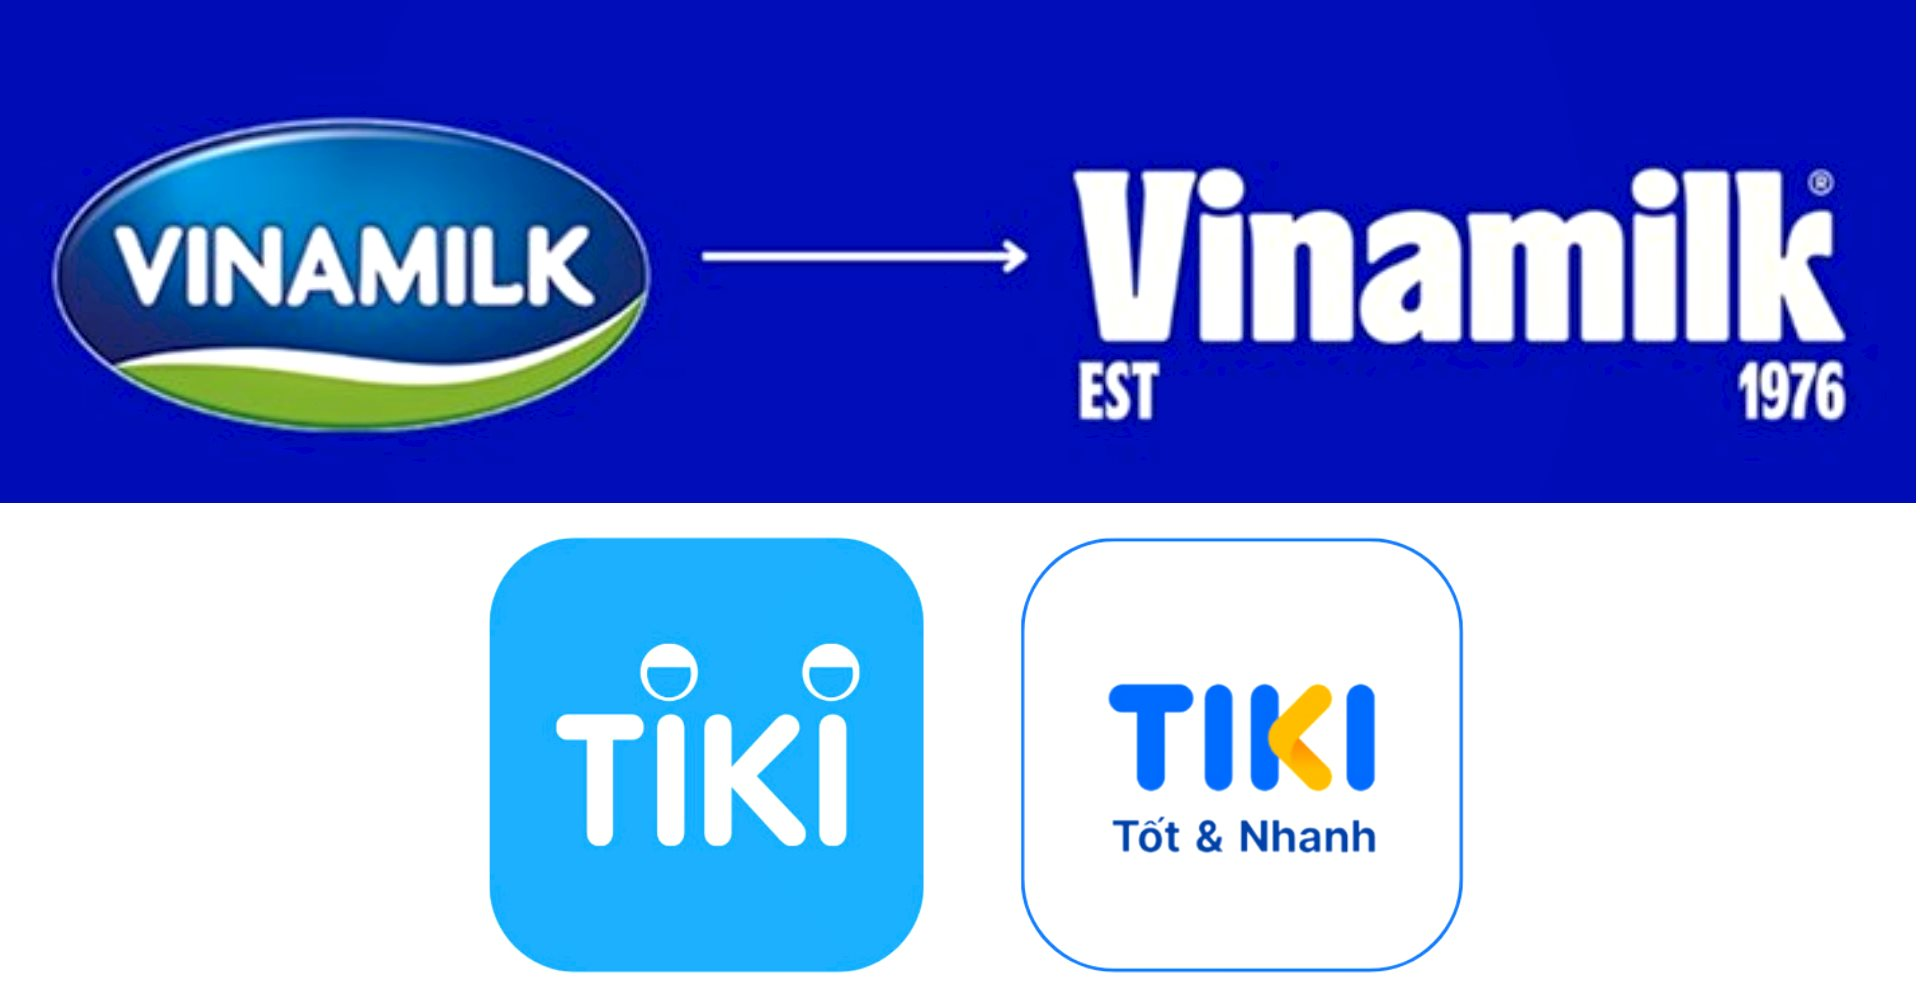 Hàng loạt thương hiệu từ Vinamilk, Bia Hà Nội đến Tiki thay đổi bộ nhận diện: Các nhãn hàng phải làm gì khi chỉ còn 3 - 6 giây để thu hút người dùng?